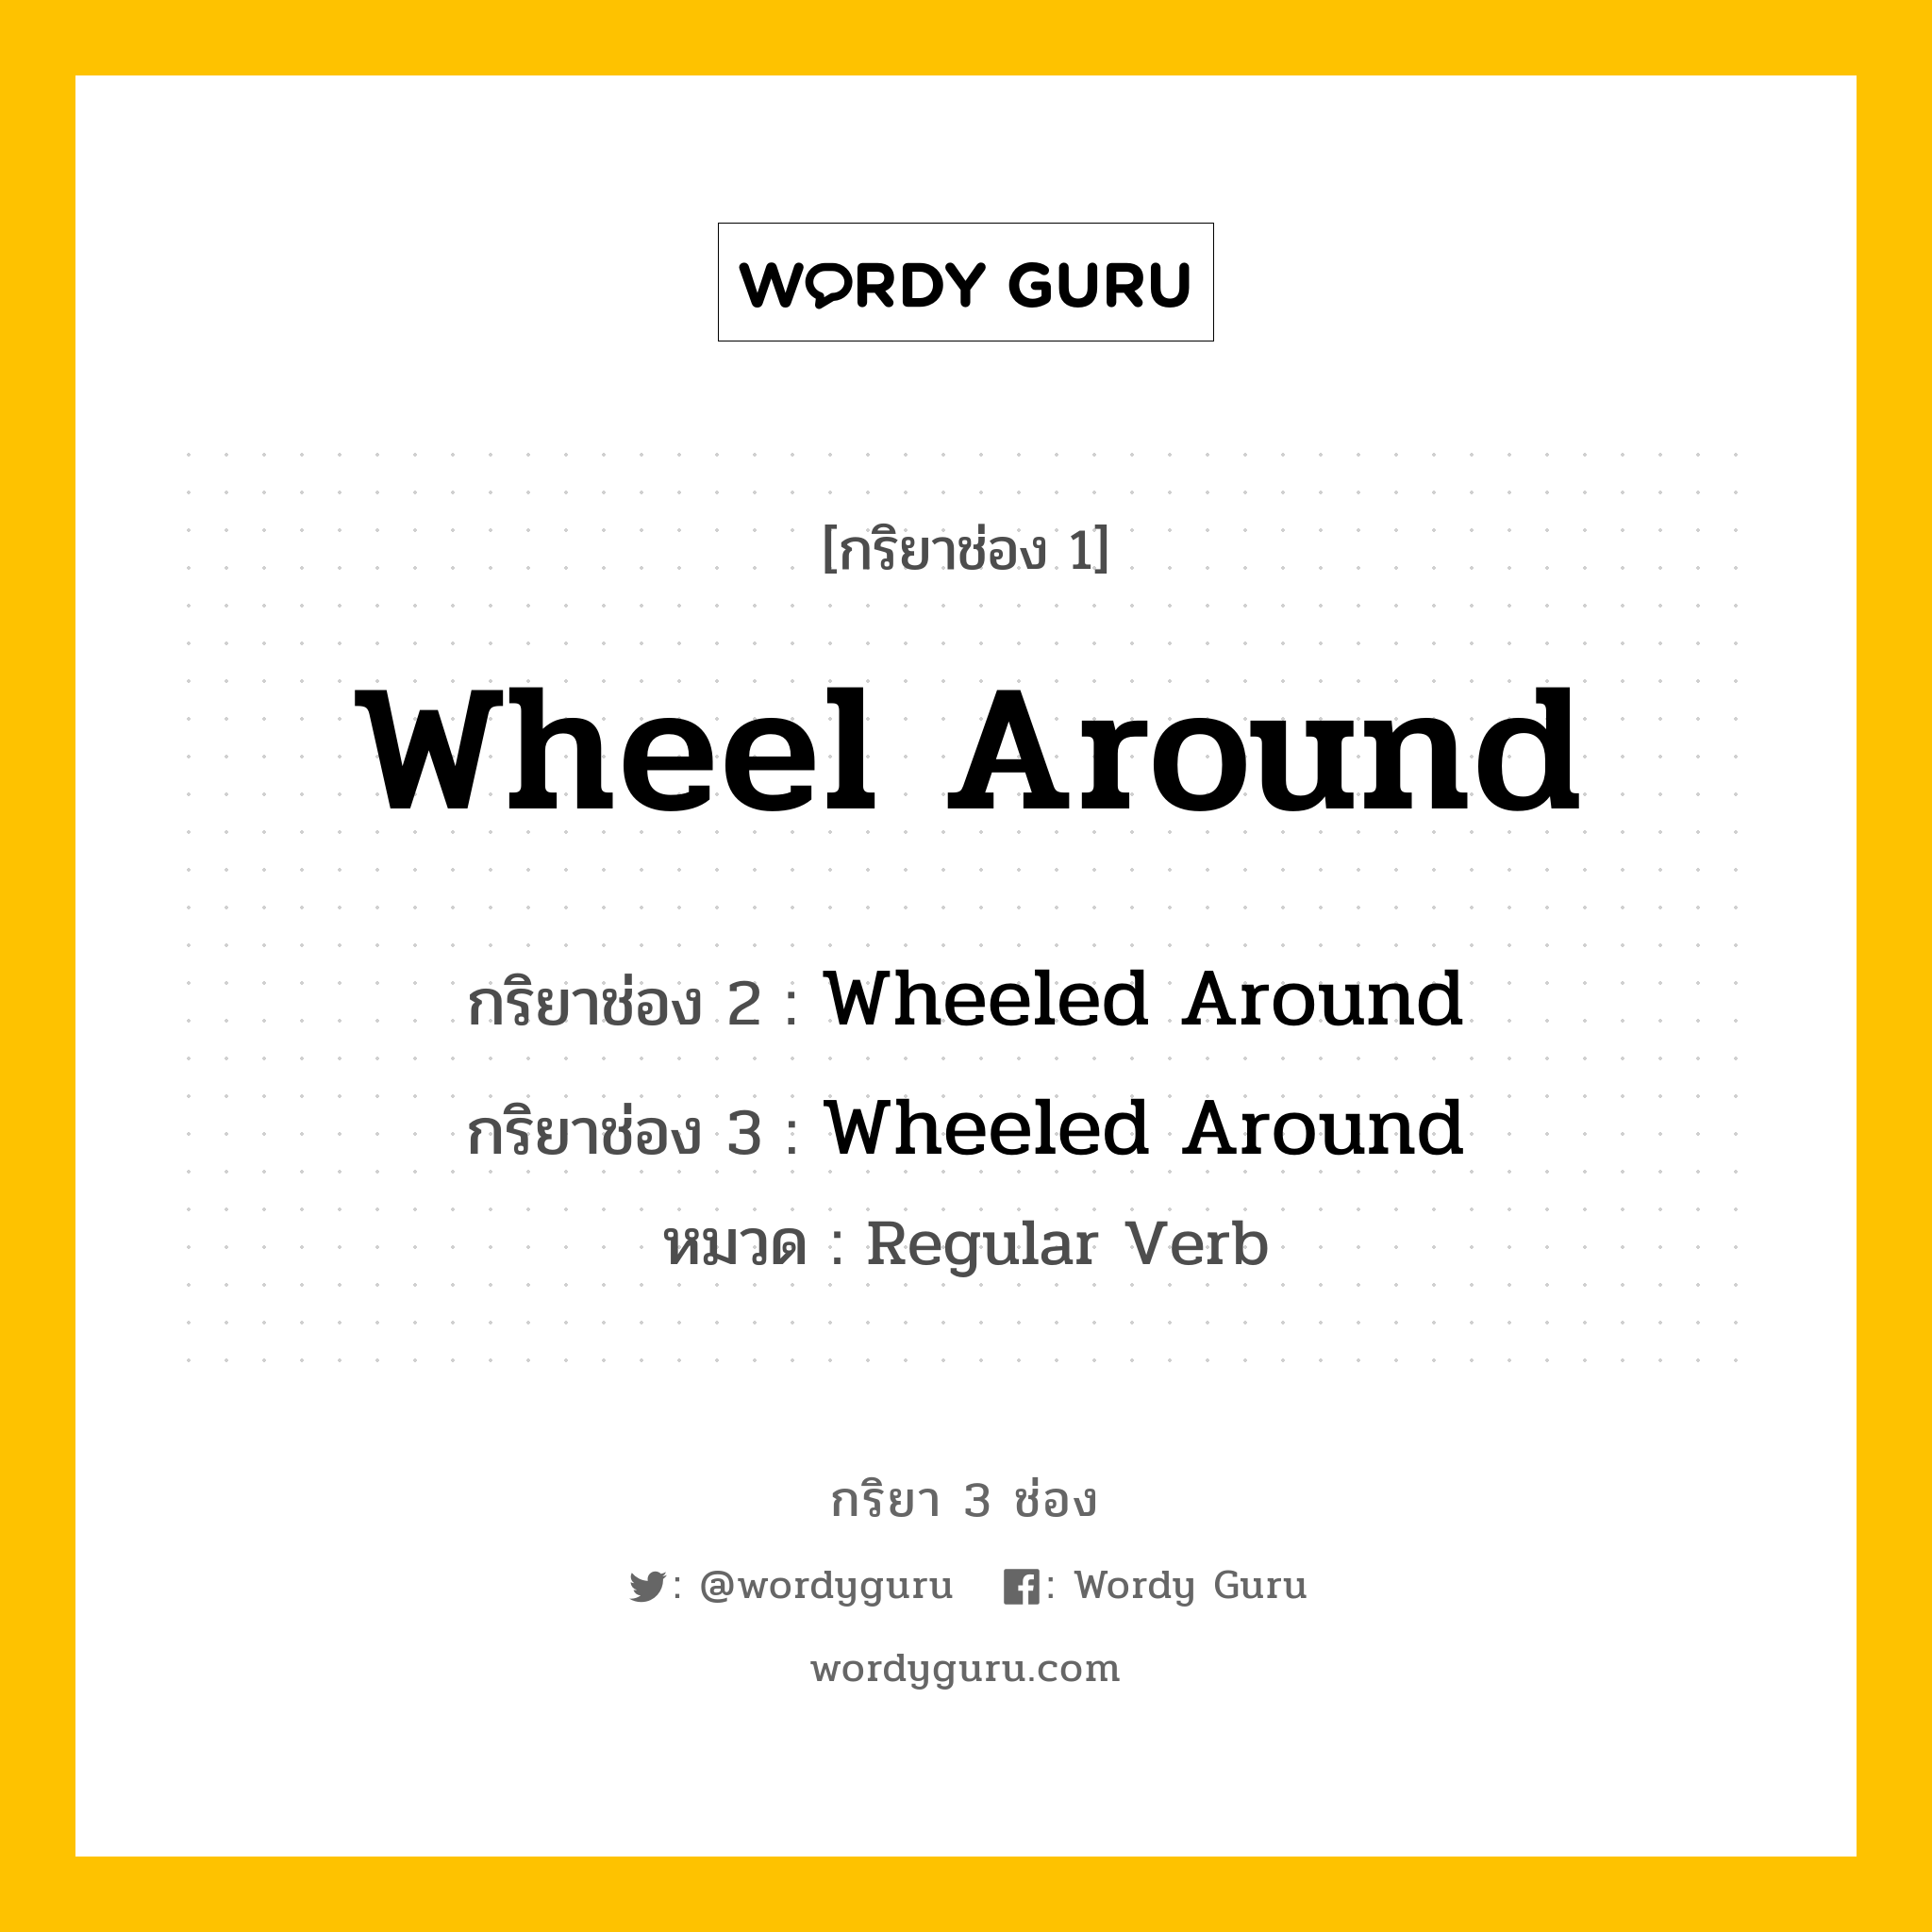 กริยา 3 ช่อง: Wheel Around ช่อง 2 Wheel Around ช่อง 3 คืออะไร, กริยาช่อง 1 Wheel Around กริยาช่อง 2 Wheeled Around กริยาช่อง 3 Wheeled Around หมวด Regular Verb หมวด Regular Verb